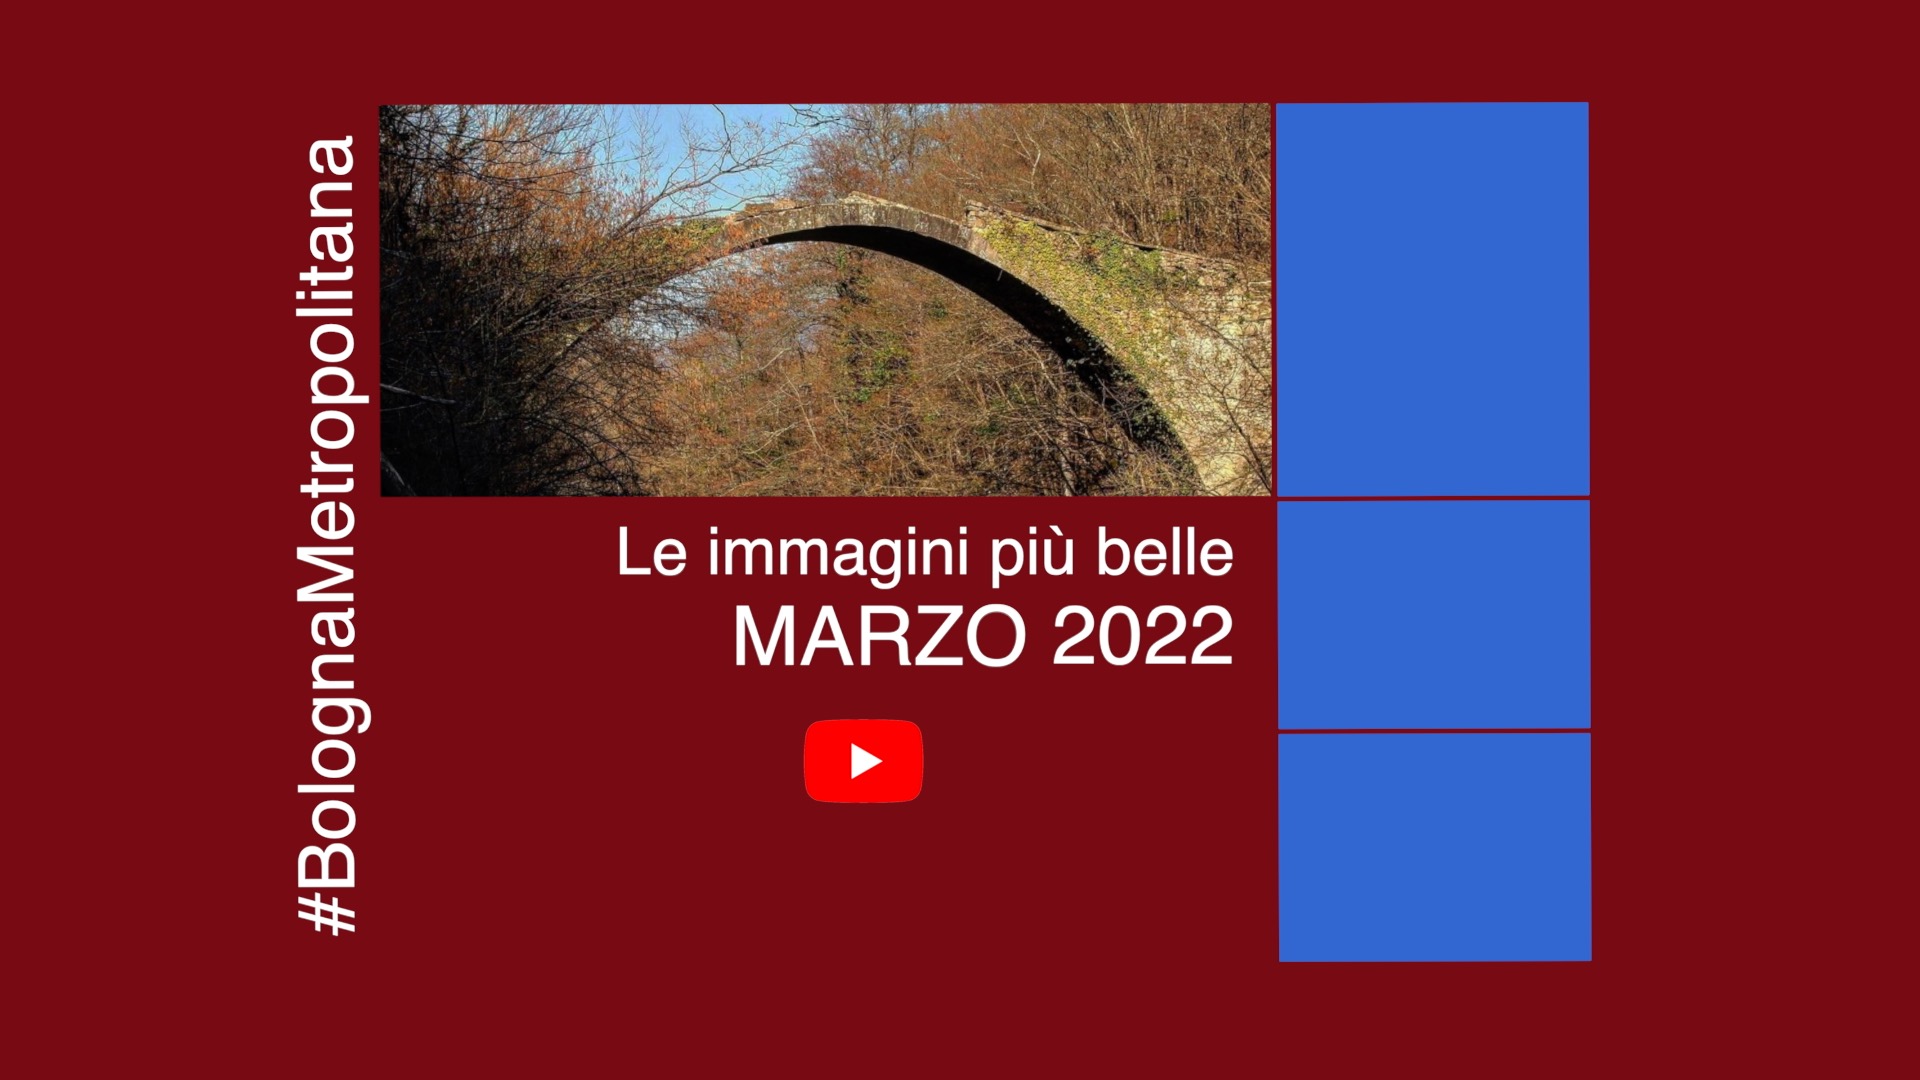 #BolognaMetropolitana - Le immagini più belle di marzo 2022